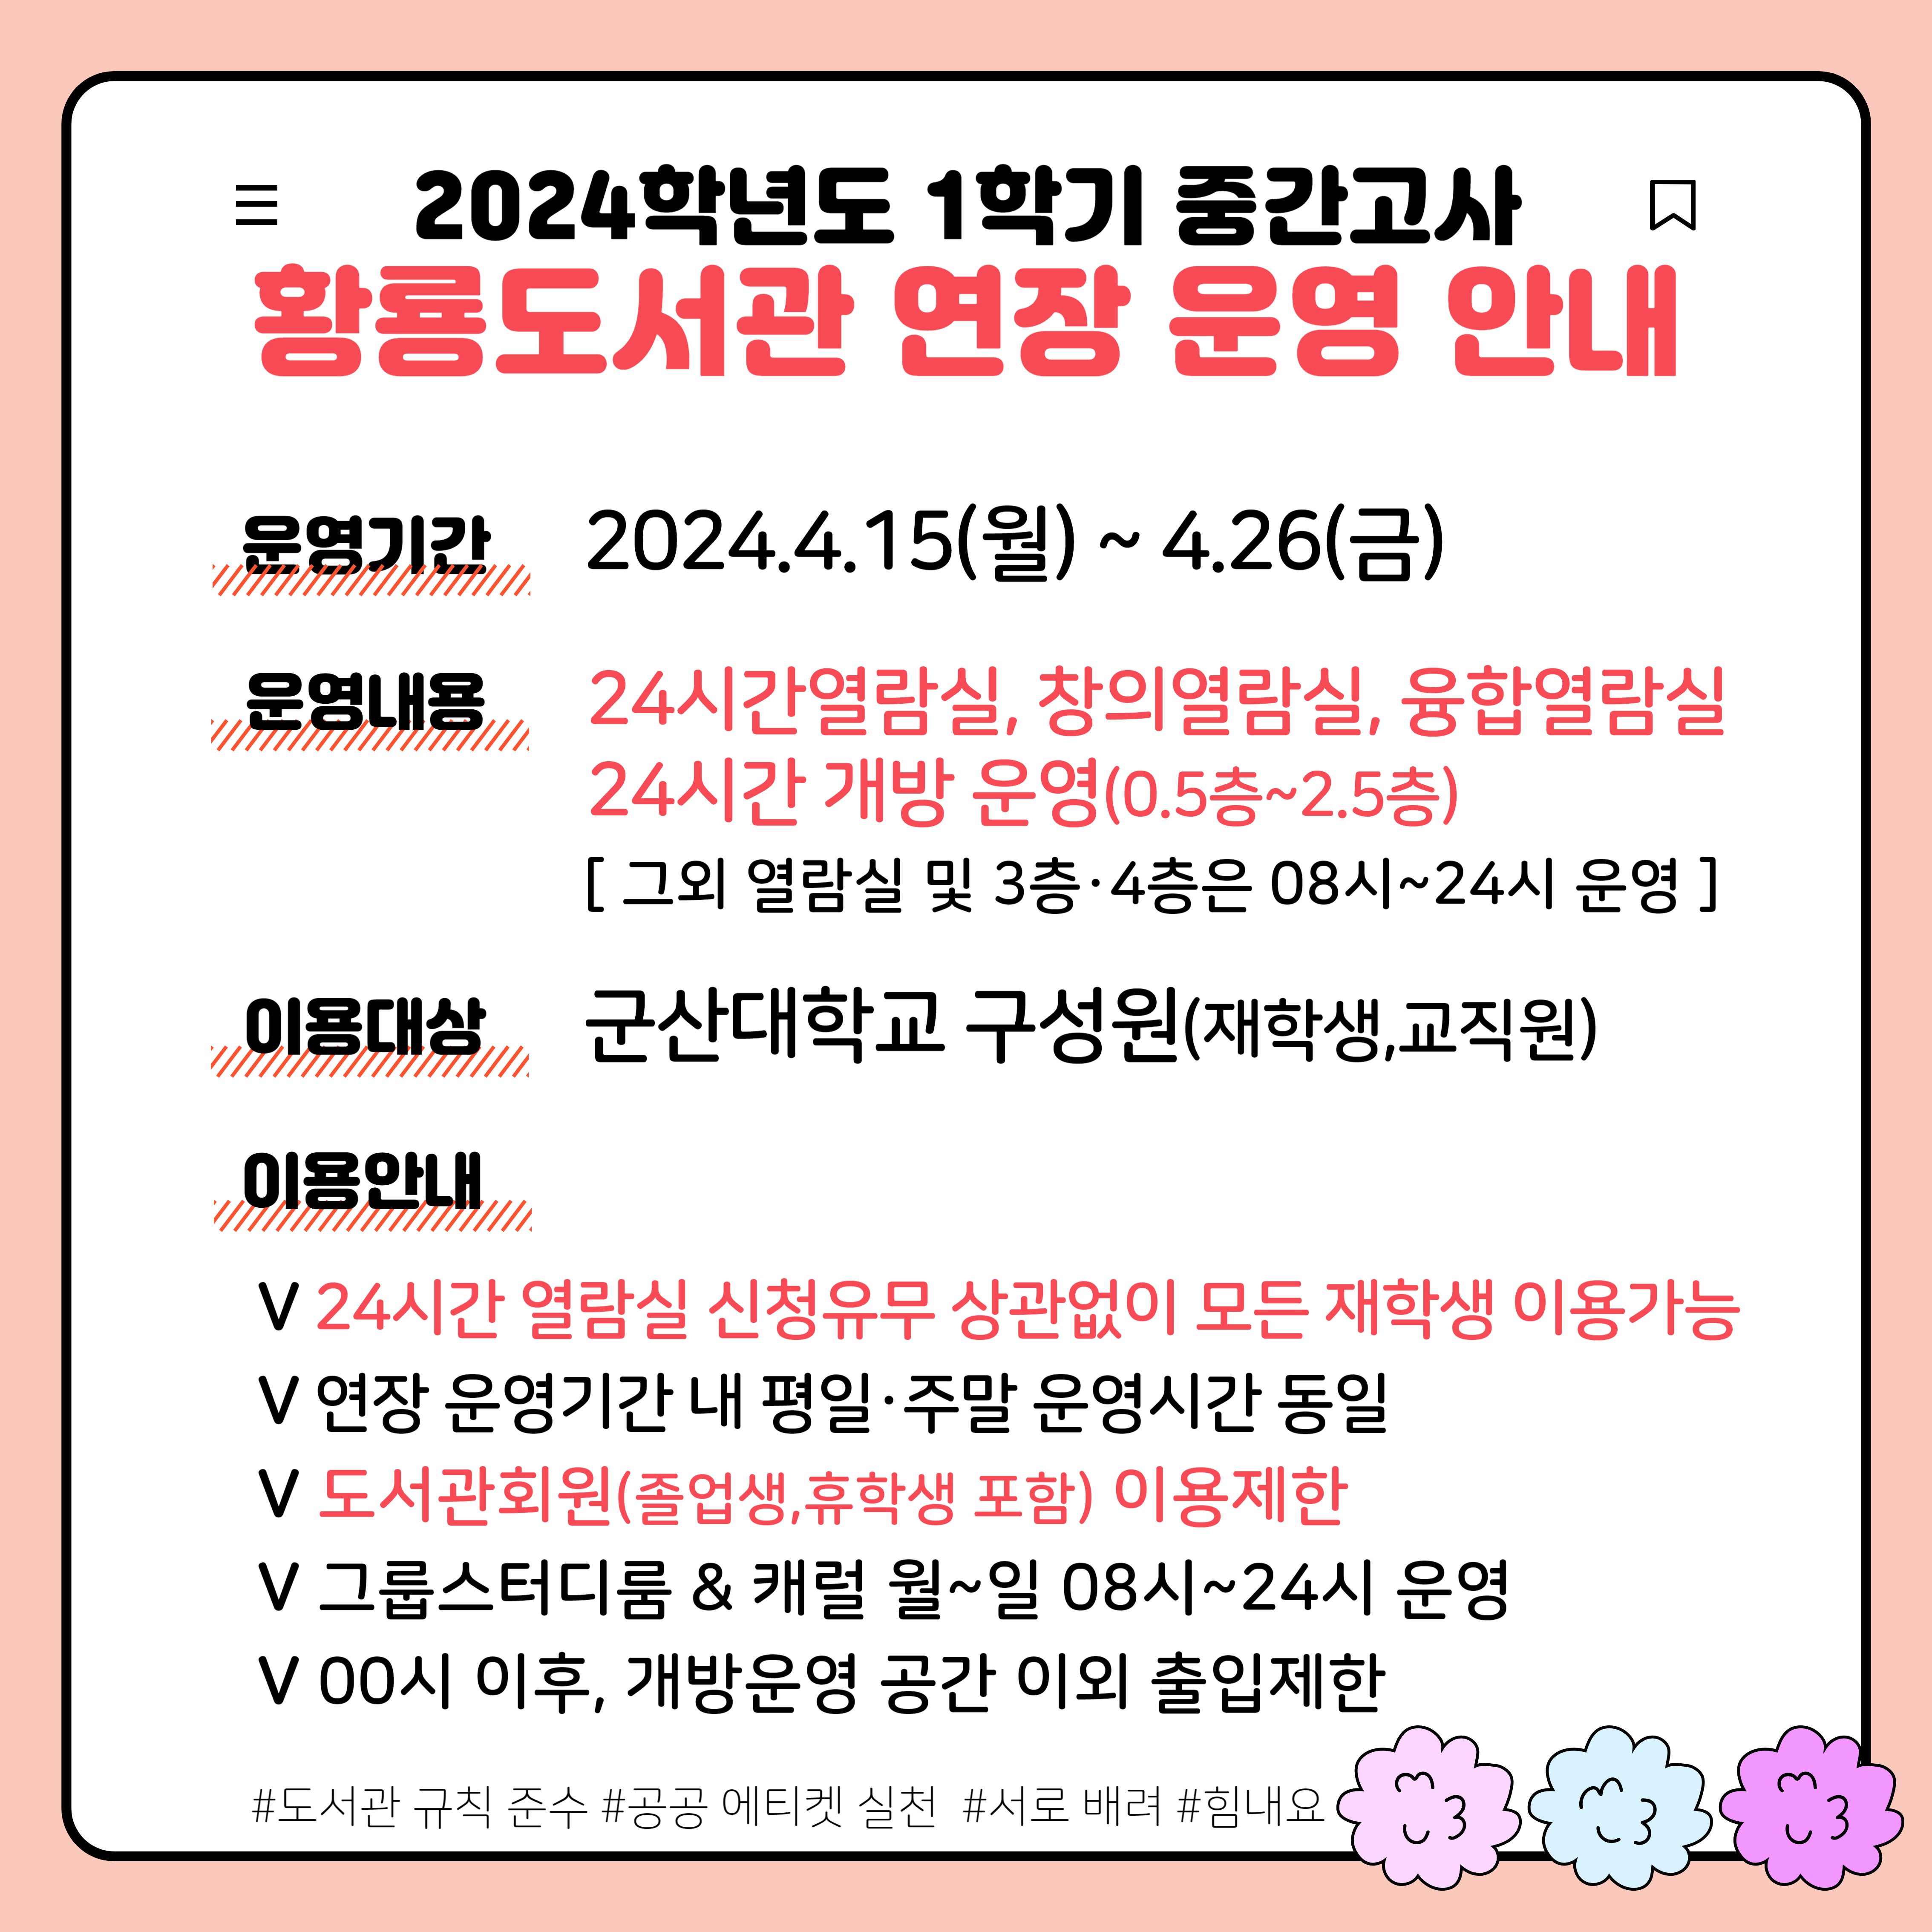 황룡도서관 연장운영 안내문(24-1중간고사)